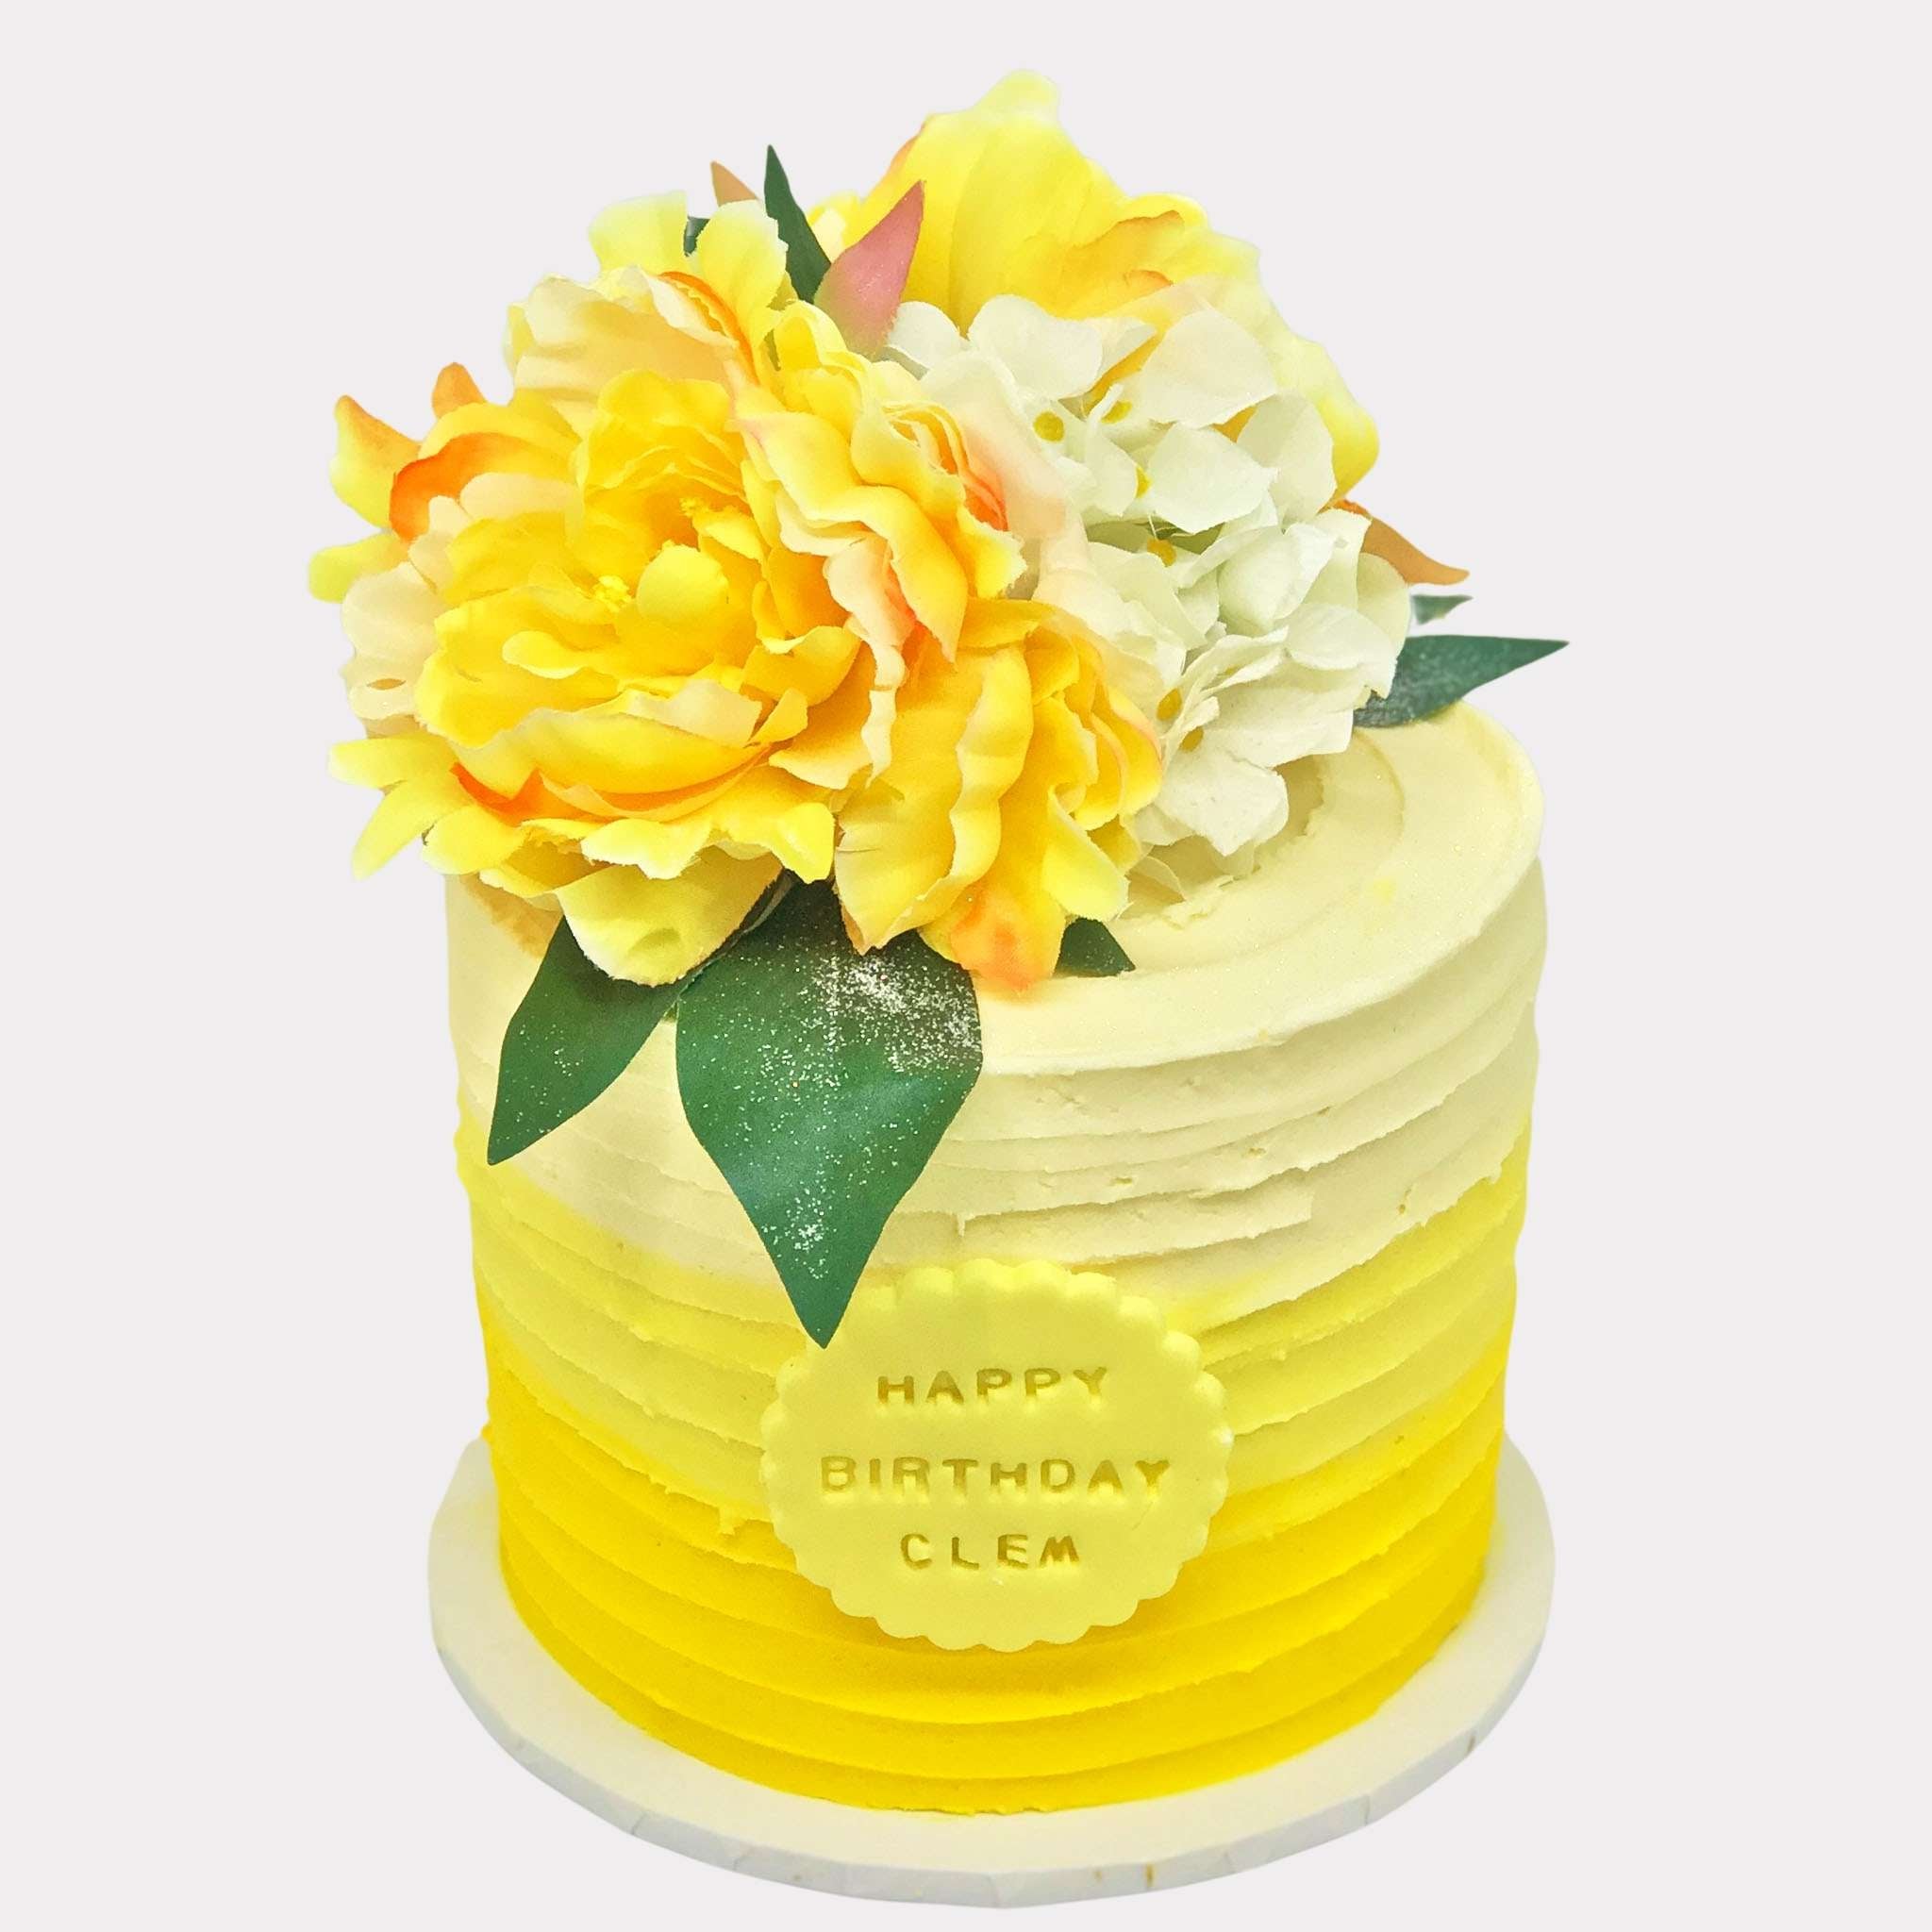 Yellow Cake Images - Free Download on Freepik